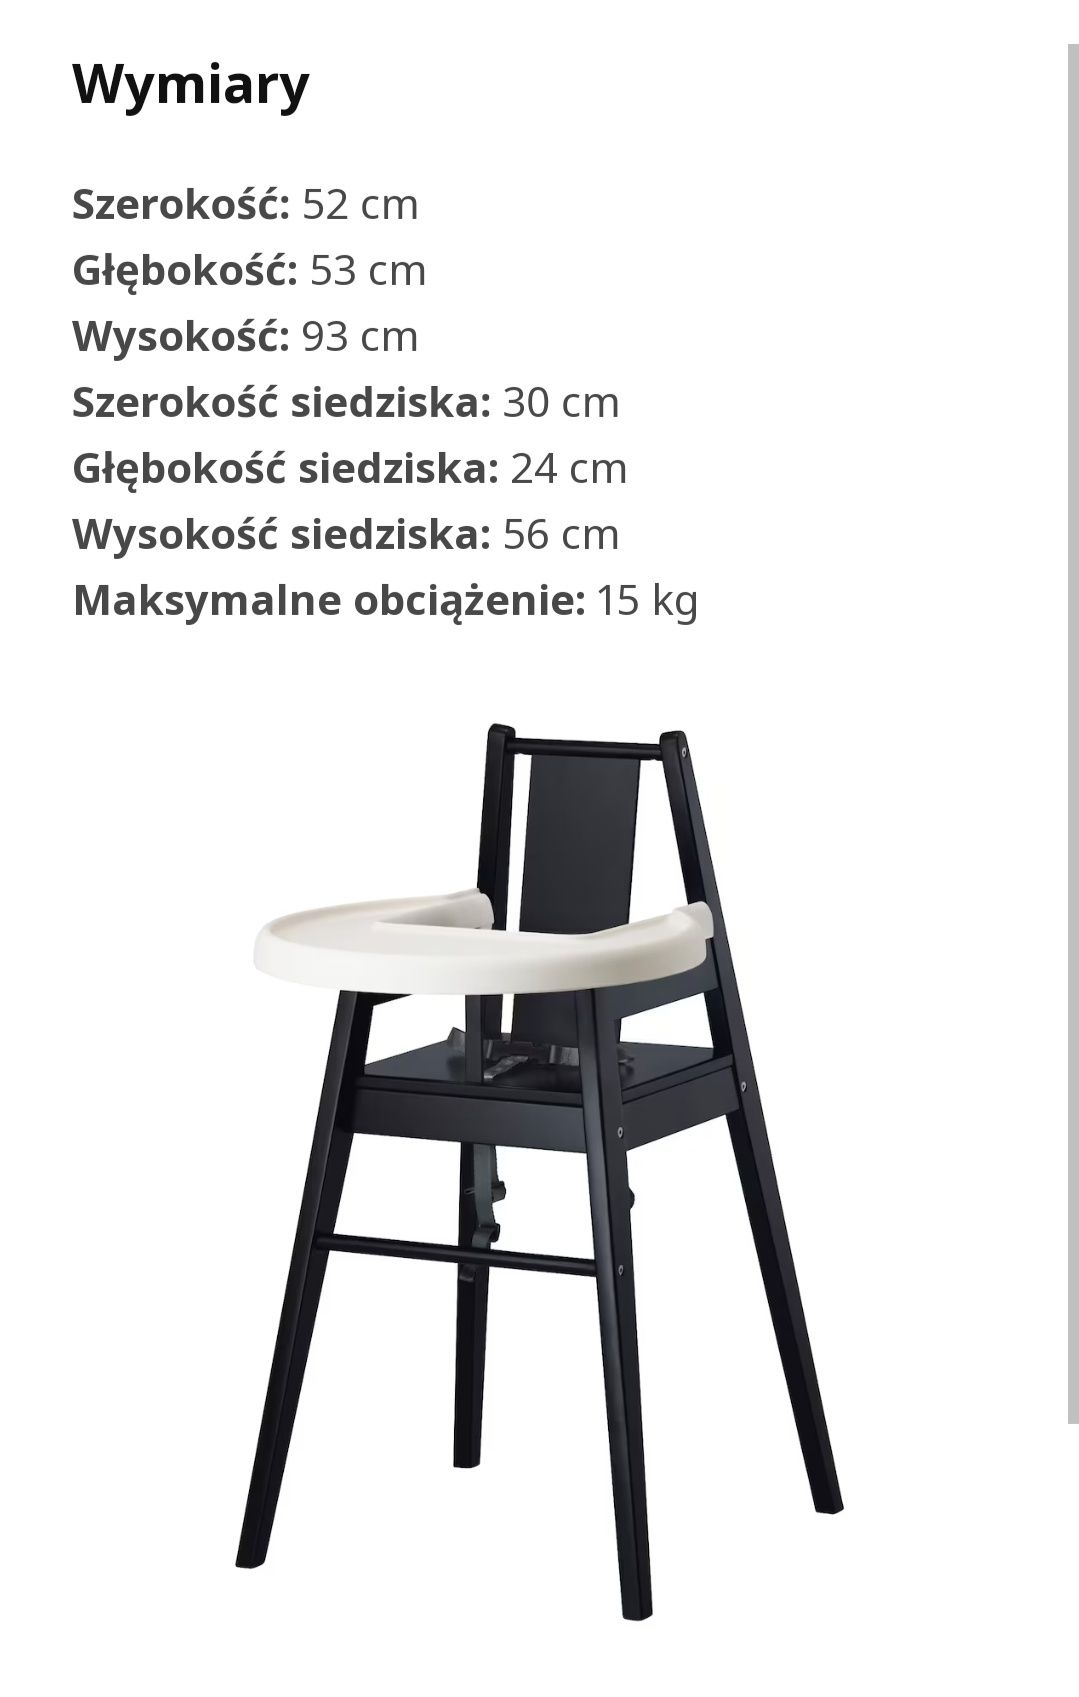 Krzesełko Ikea dla dzieci/krzesełko do karmienia dziecka IKEA